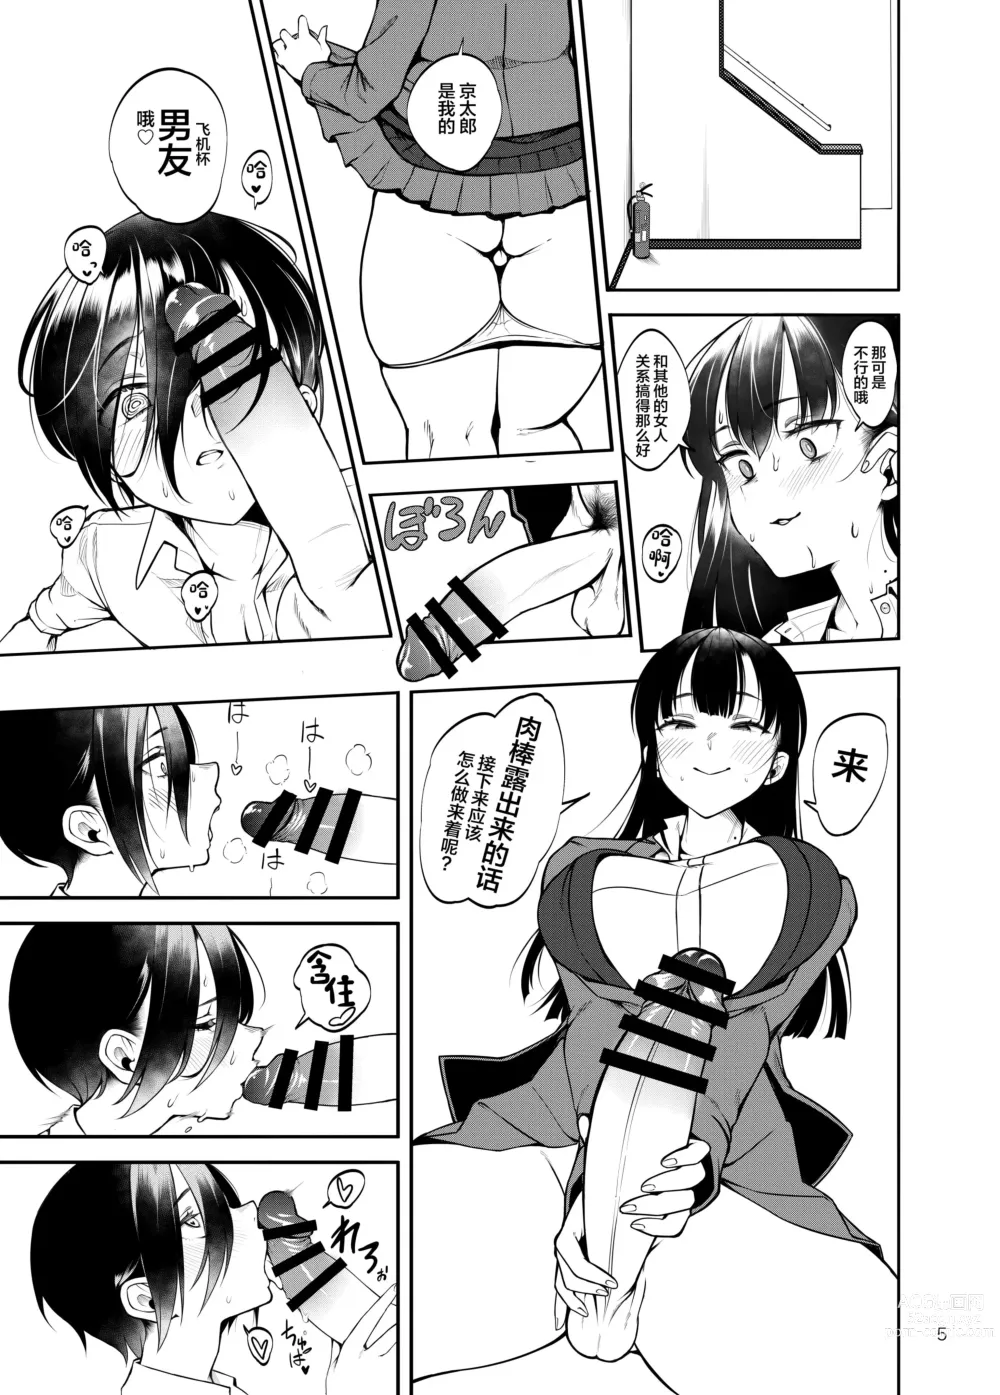 Page 6 of doujinshi Boku no teisou ga yabai yatsu